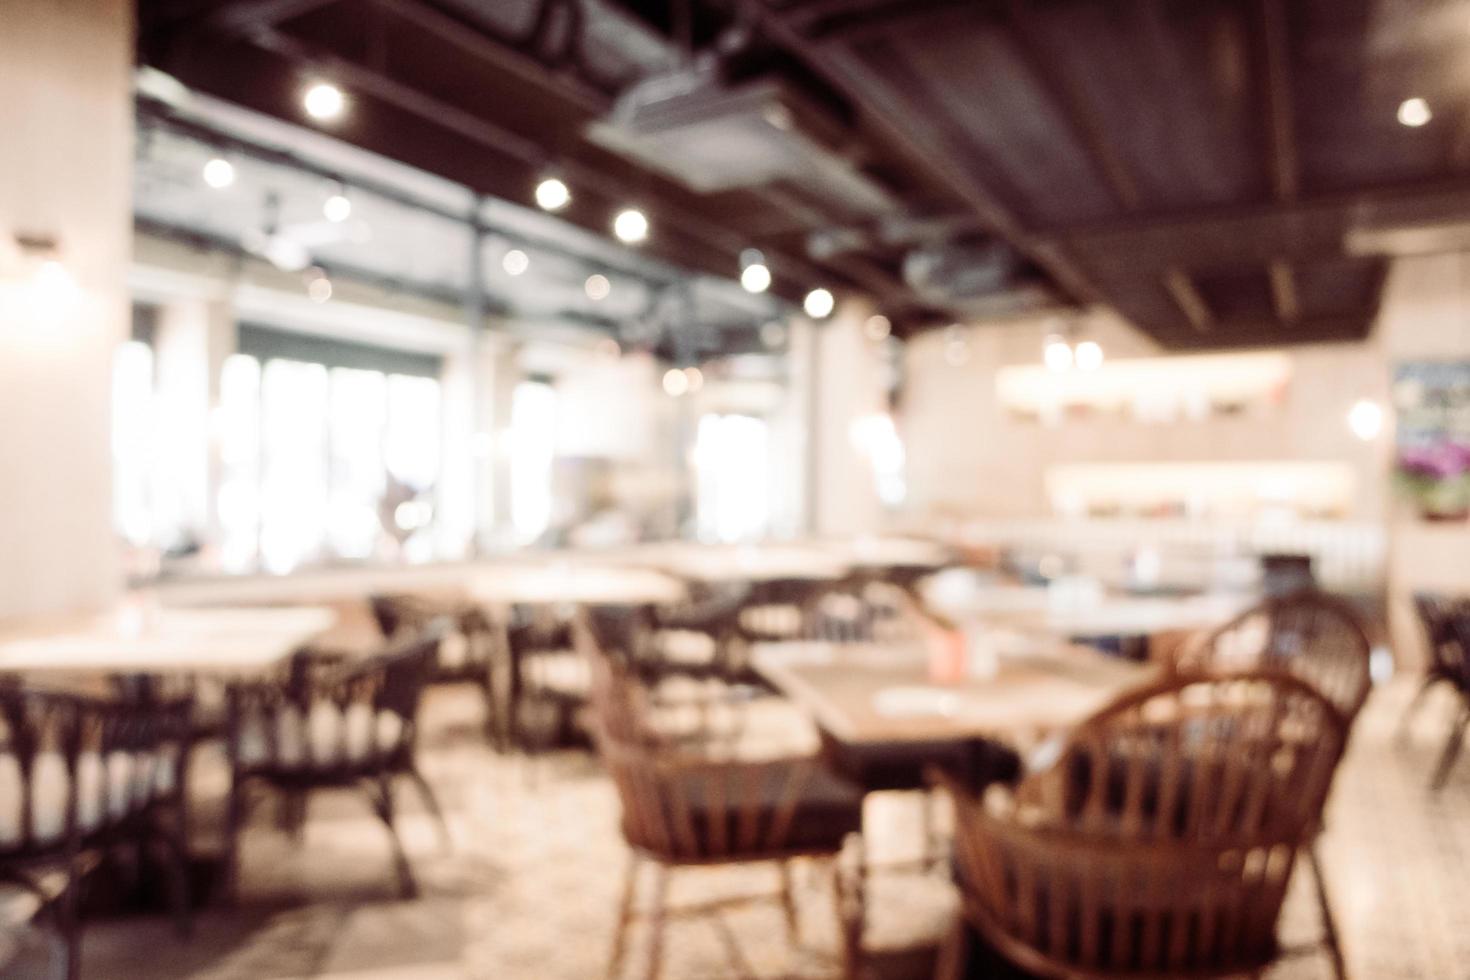 flou abstrait et café-restaurant défocalisé intérieur café et restaurant photo